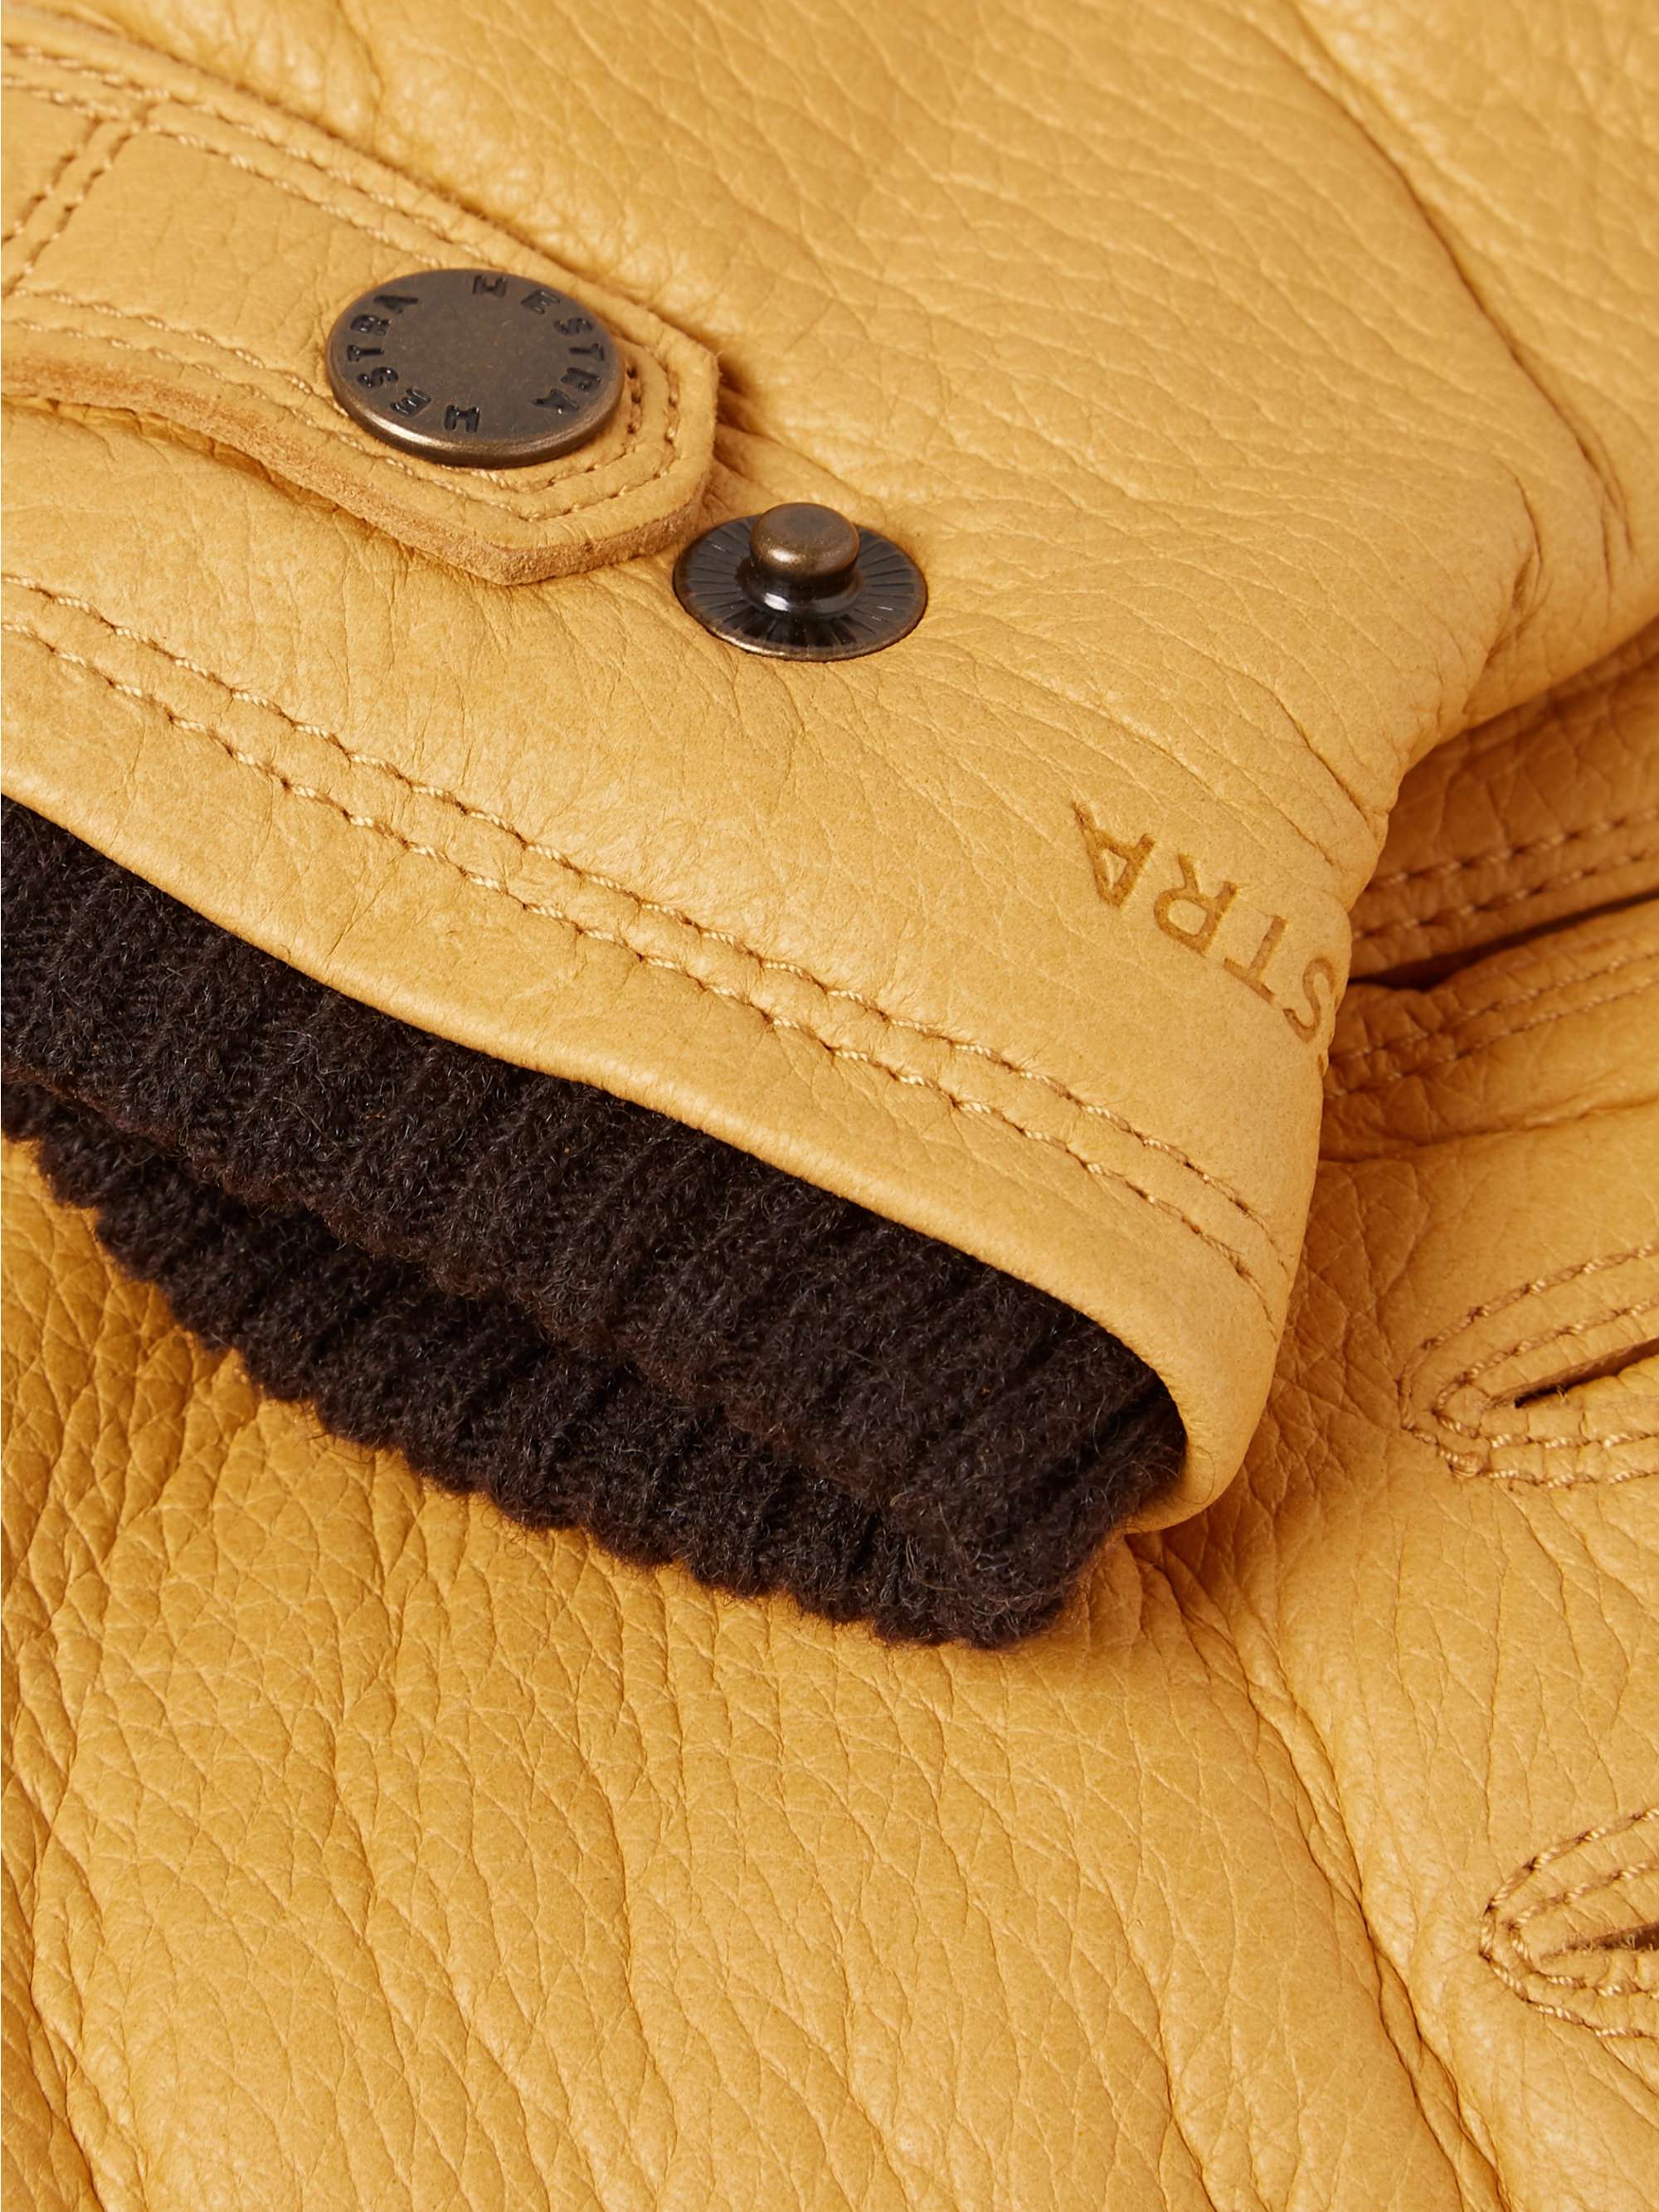 HESTRA Utsjö Fleece-Lined Full-Grain Leather and Wool-Blend Gloves